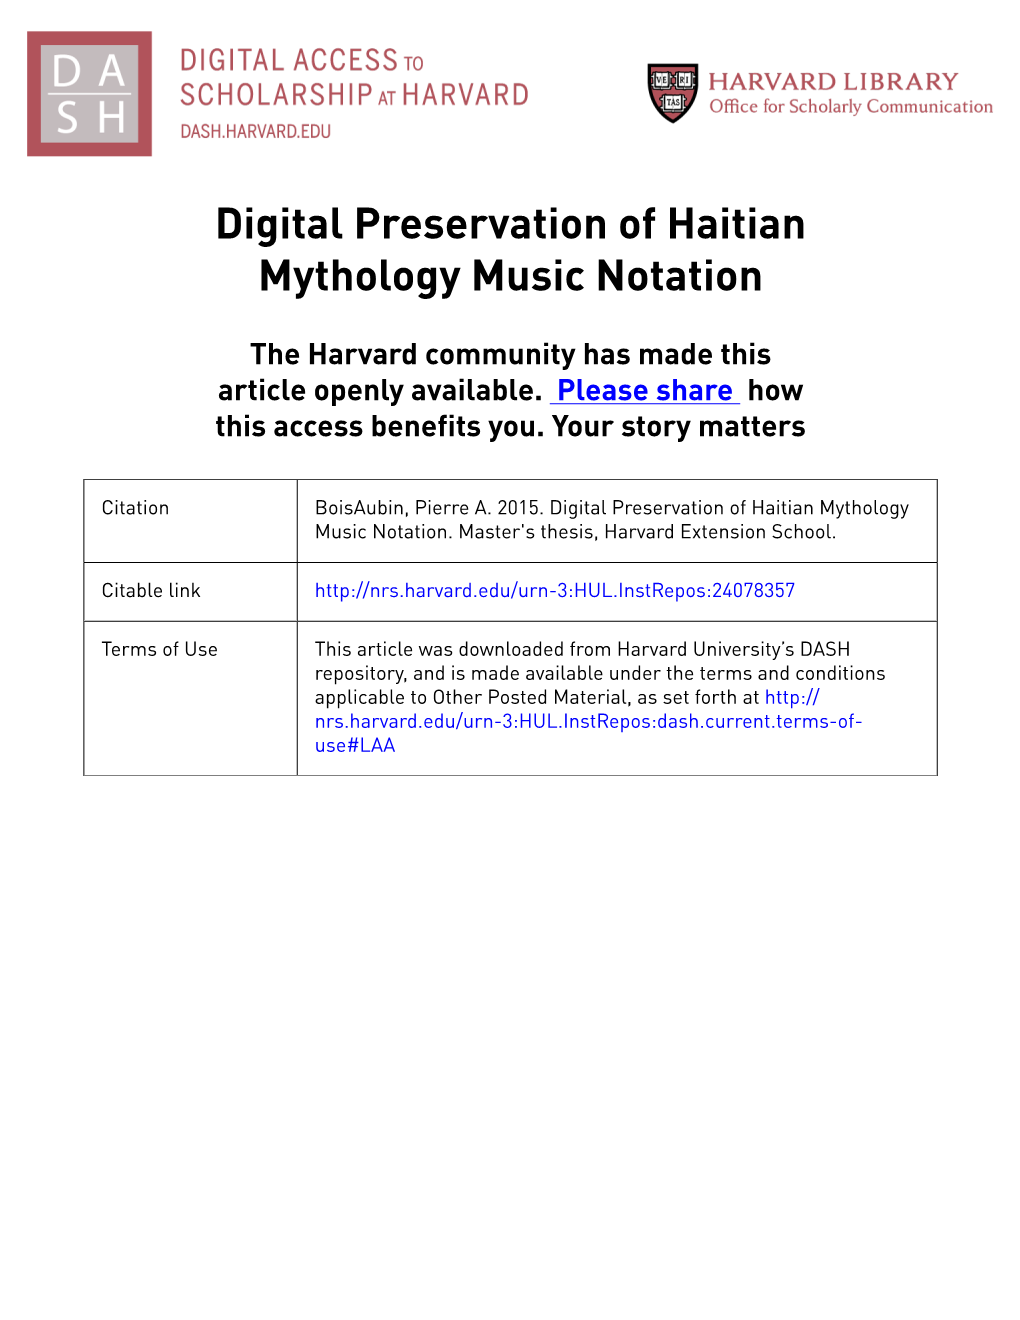 Digital Preservation of Haitian Mythology Music Notation